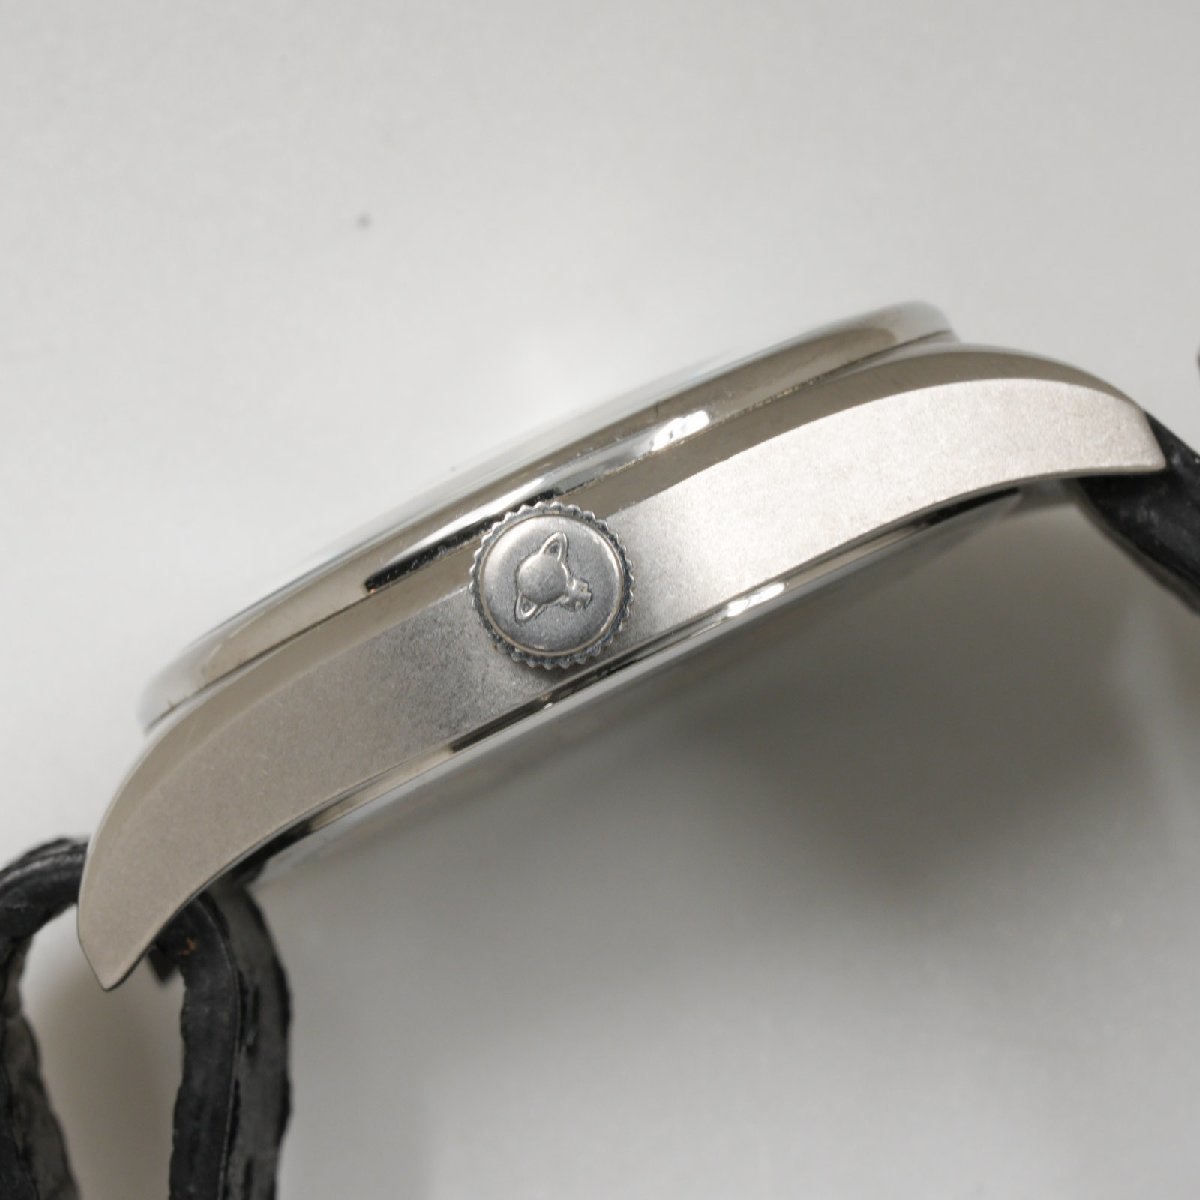 ヴィヴィアン・ウエストウッド Vivienne Westwood 腕時計 ヘリテージ クオーツ VV012BK 丸型 メンズ 中古 [質イコー]の画像2